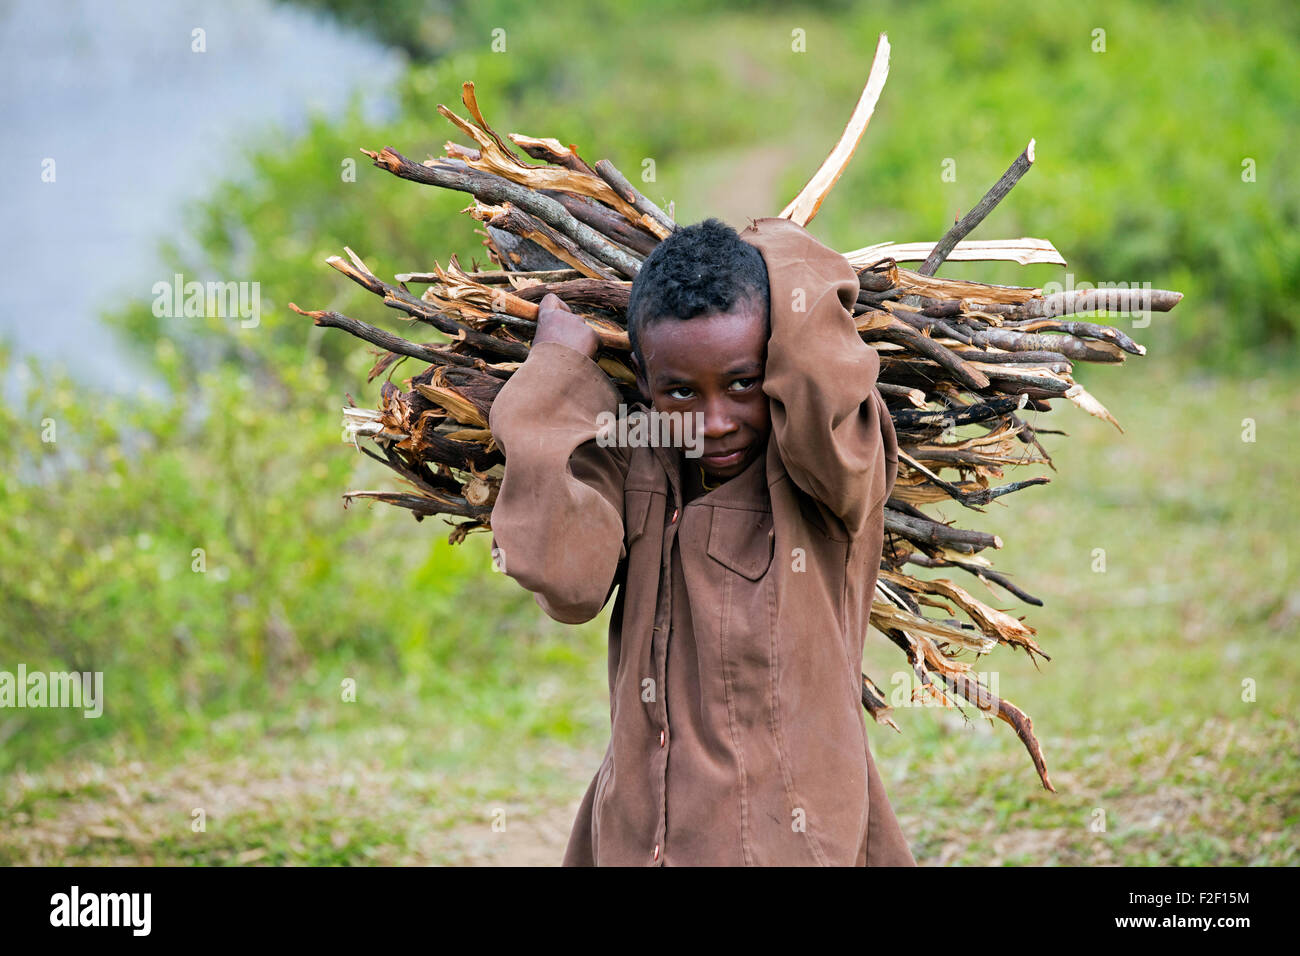 Porträt des madagassischen Kind tragen Bündel Brennholz auf seinen Rücken, Vatovavy-Fitovinany, Madagaskar, südöstlichen Afrika hautnah Stockfoto